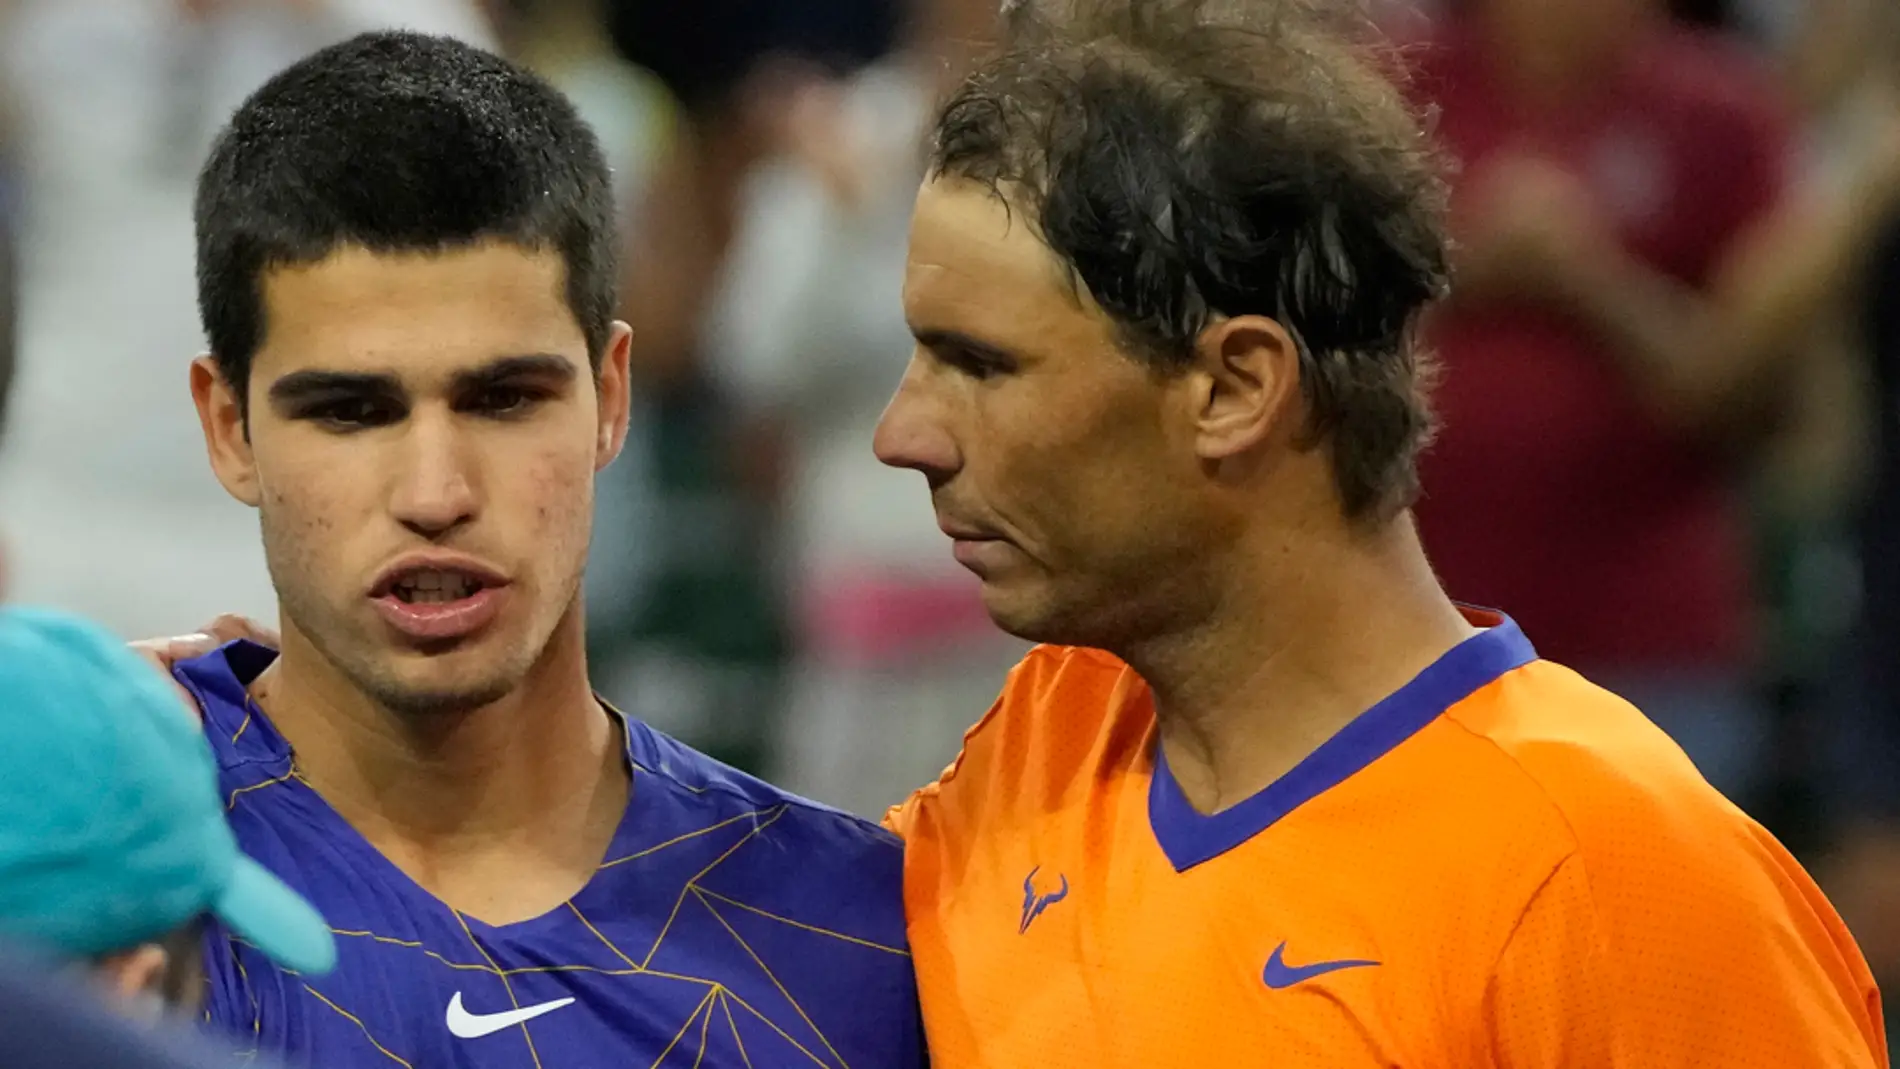 Alcaraz y Nadal optan al título en el Mutua Madrid Open